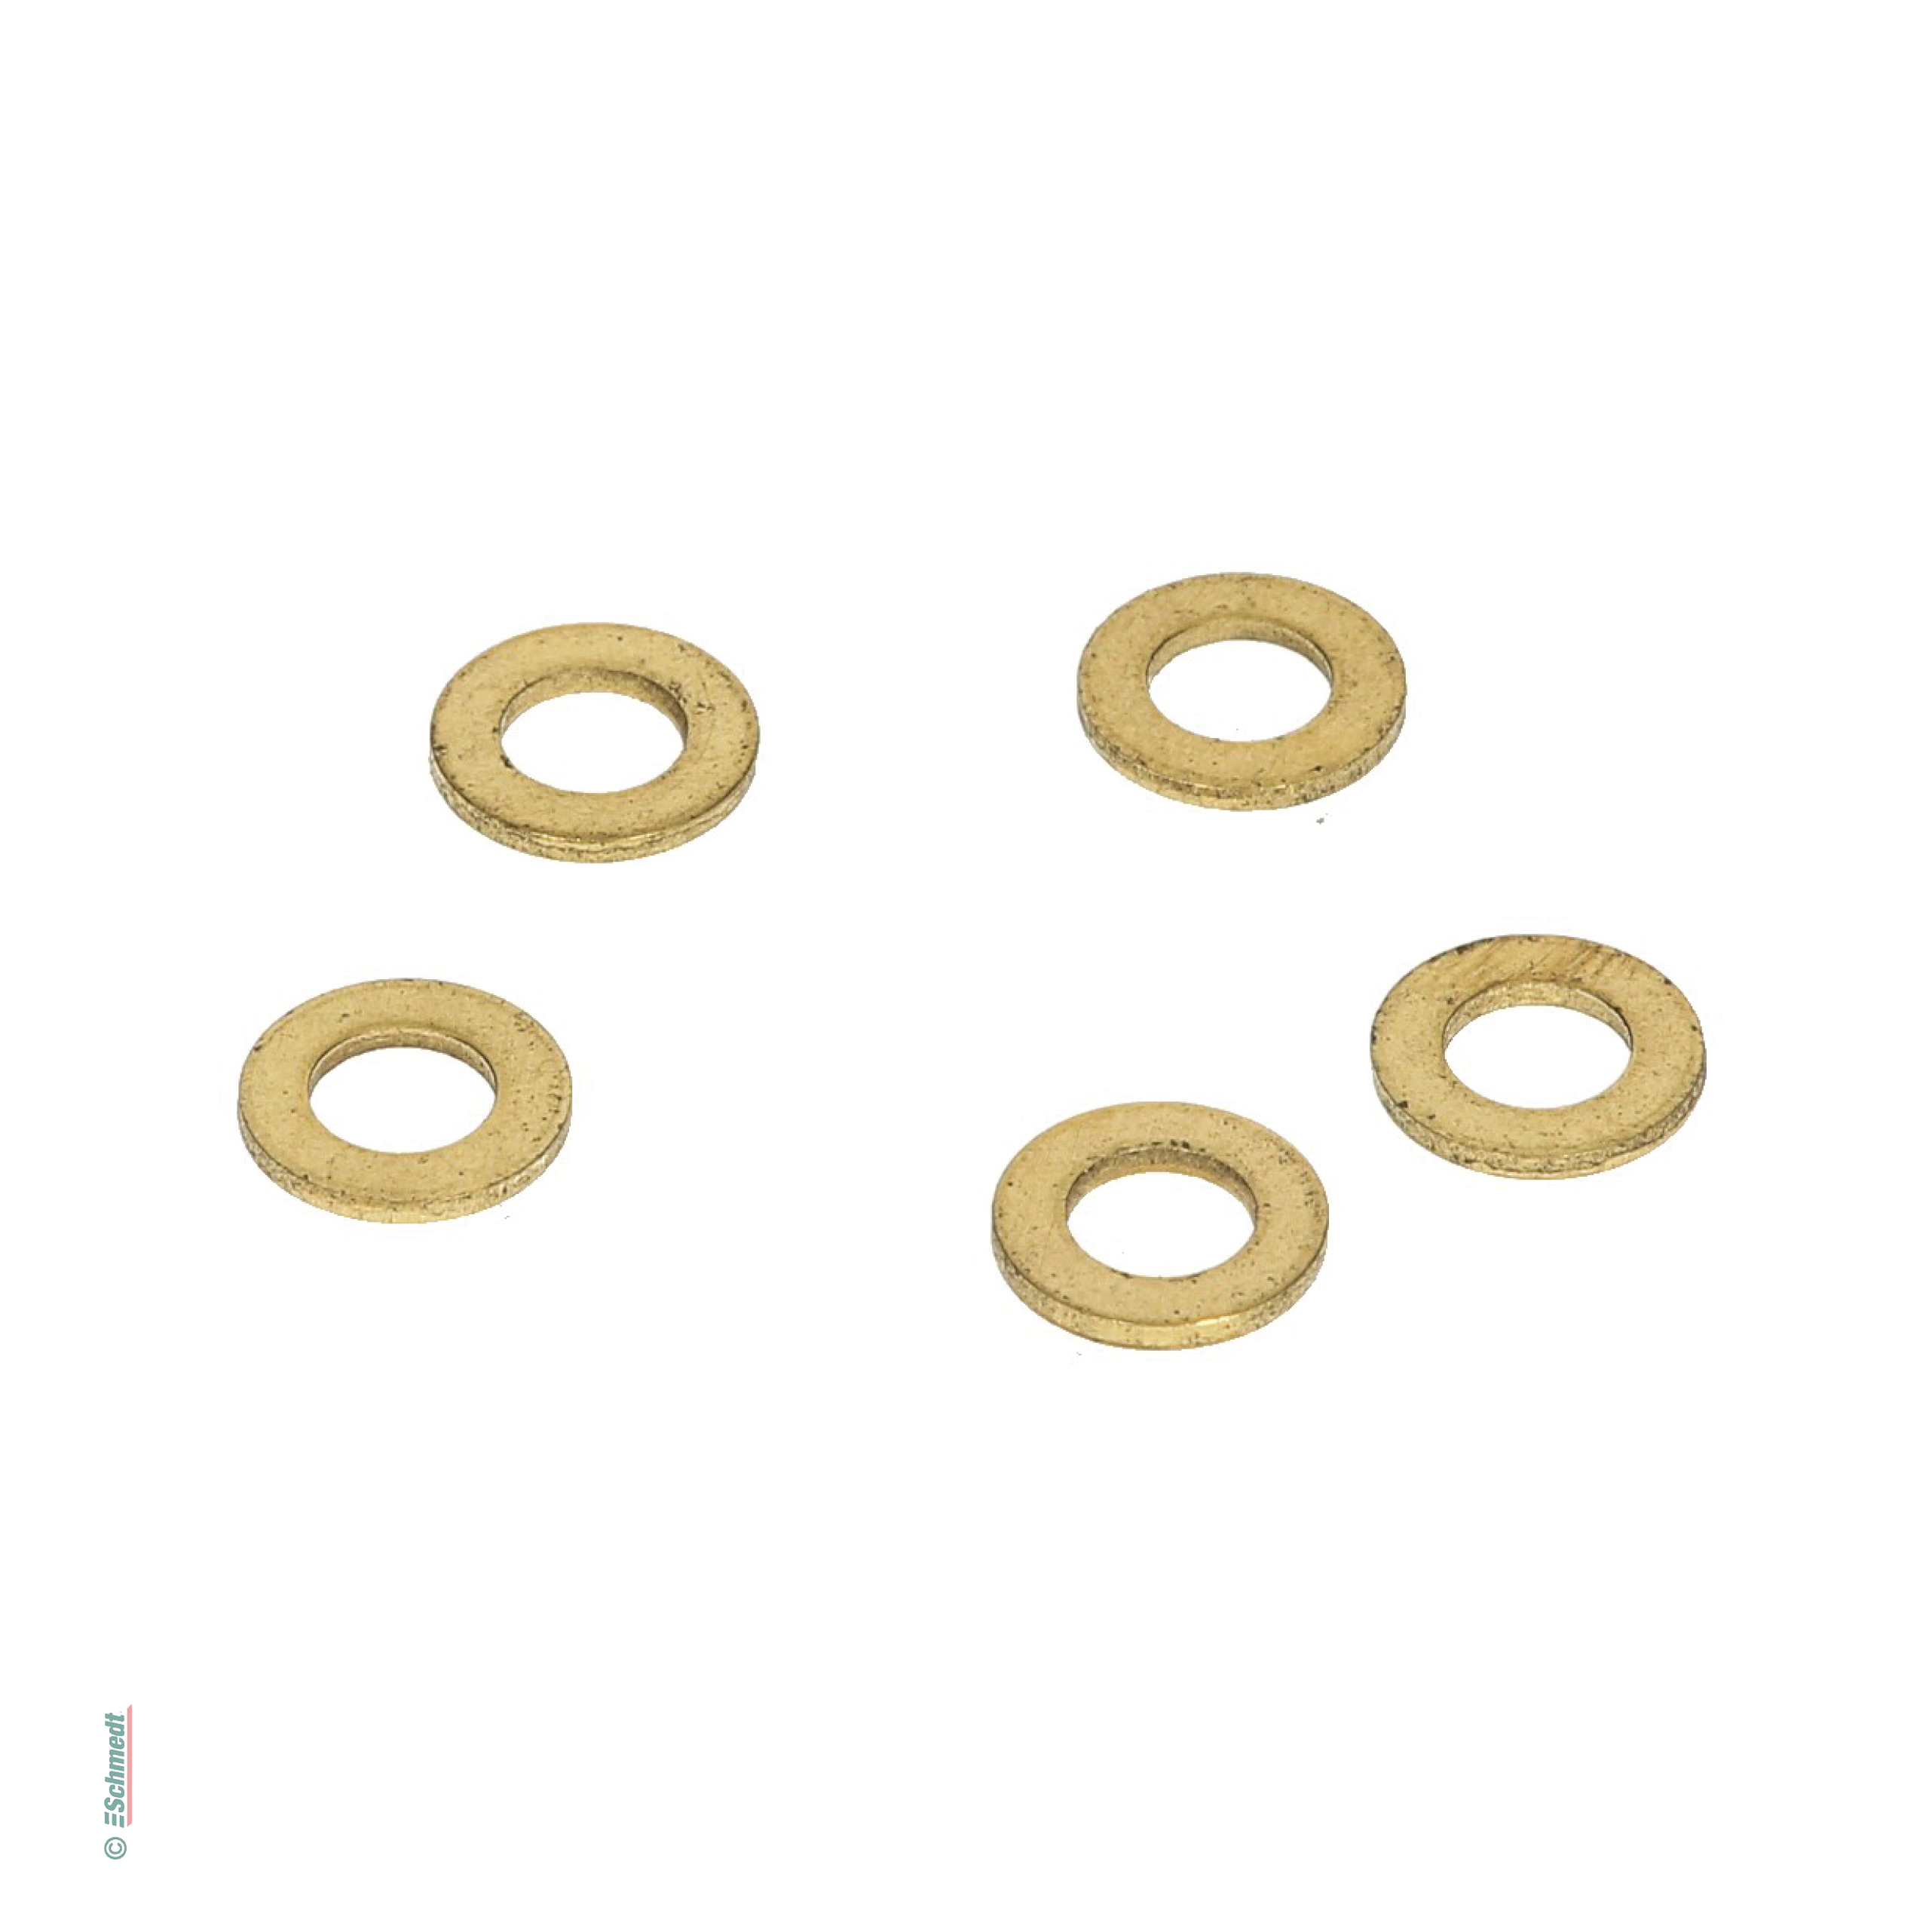 Arandela para tornillo de encuadernación - calidad estándar - Metal latonado, dorado - » Grosor: aprox. 1 mm
» Ø exterior: aprox. 9,8 mm 
...